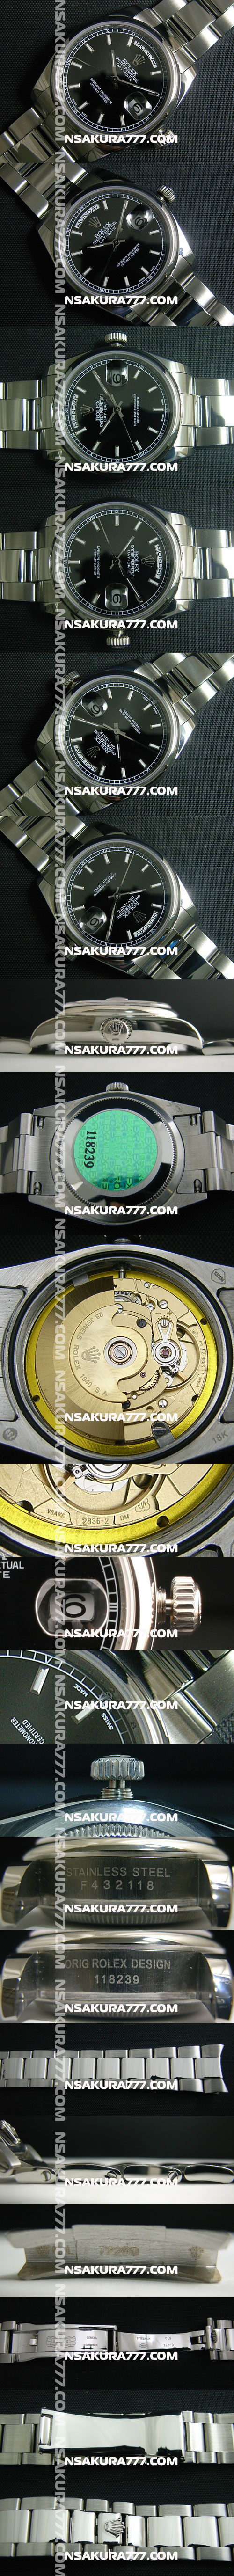 レプリカ時計ロレックスデイデイトSwiss ETA社 2836-2 ムーブメント 28800振動 オートマティック(自動巻き) - ウインドウを閉じる